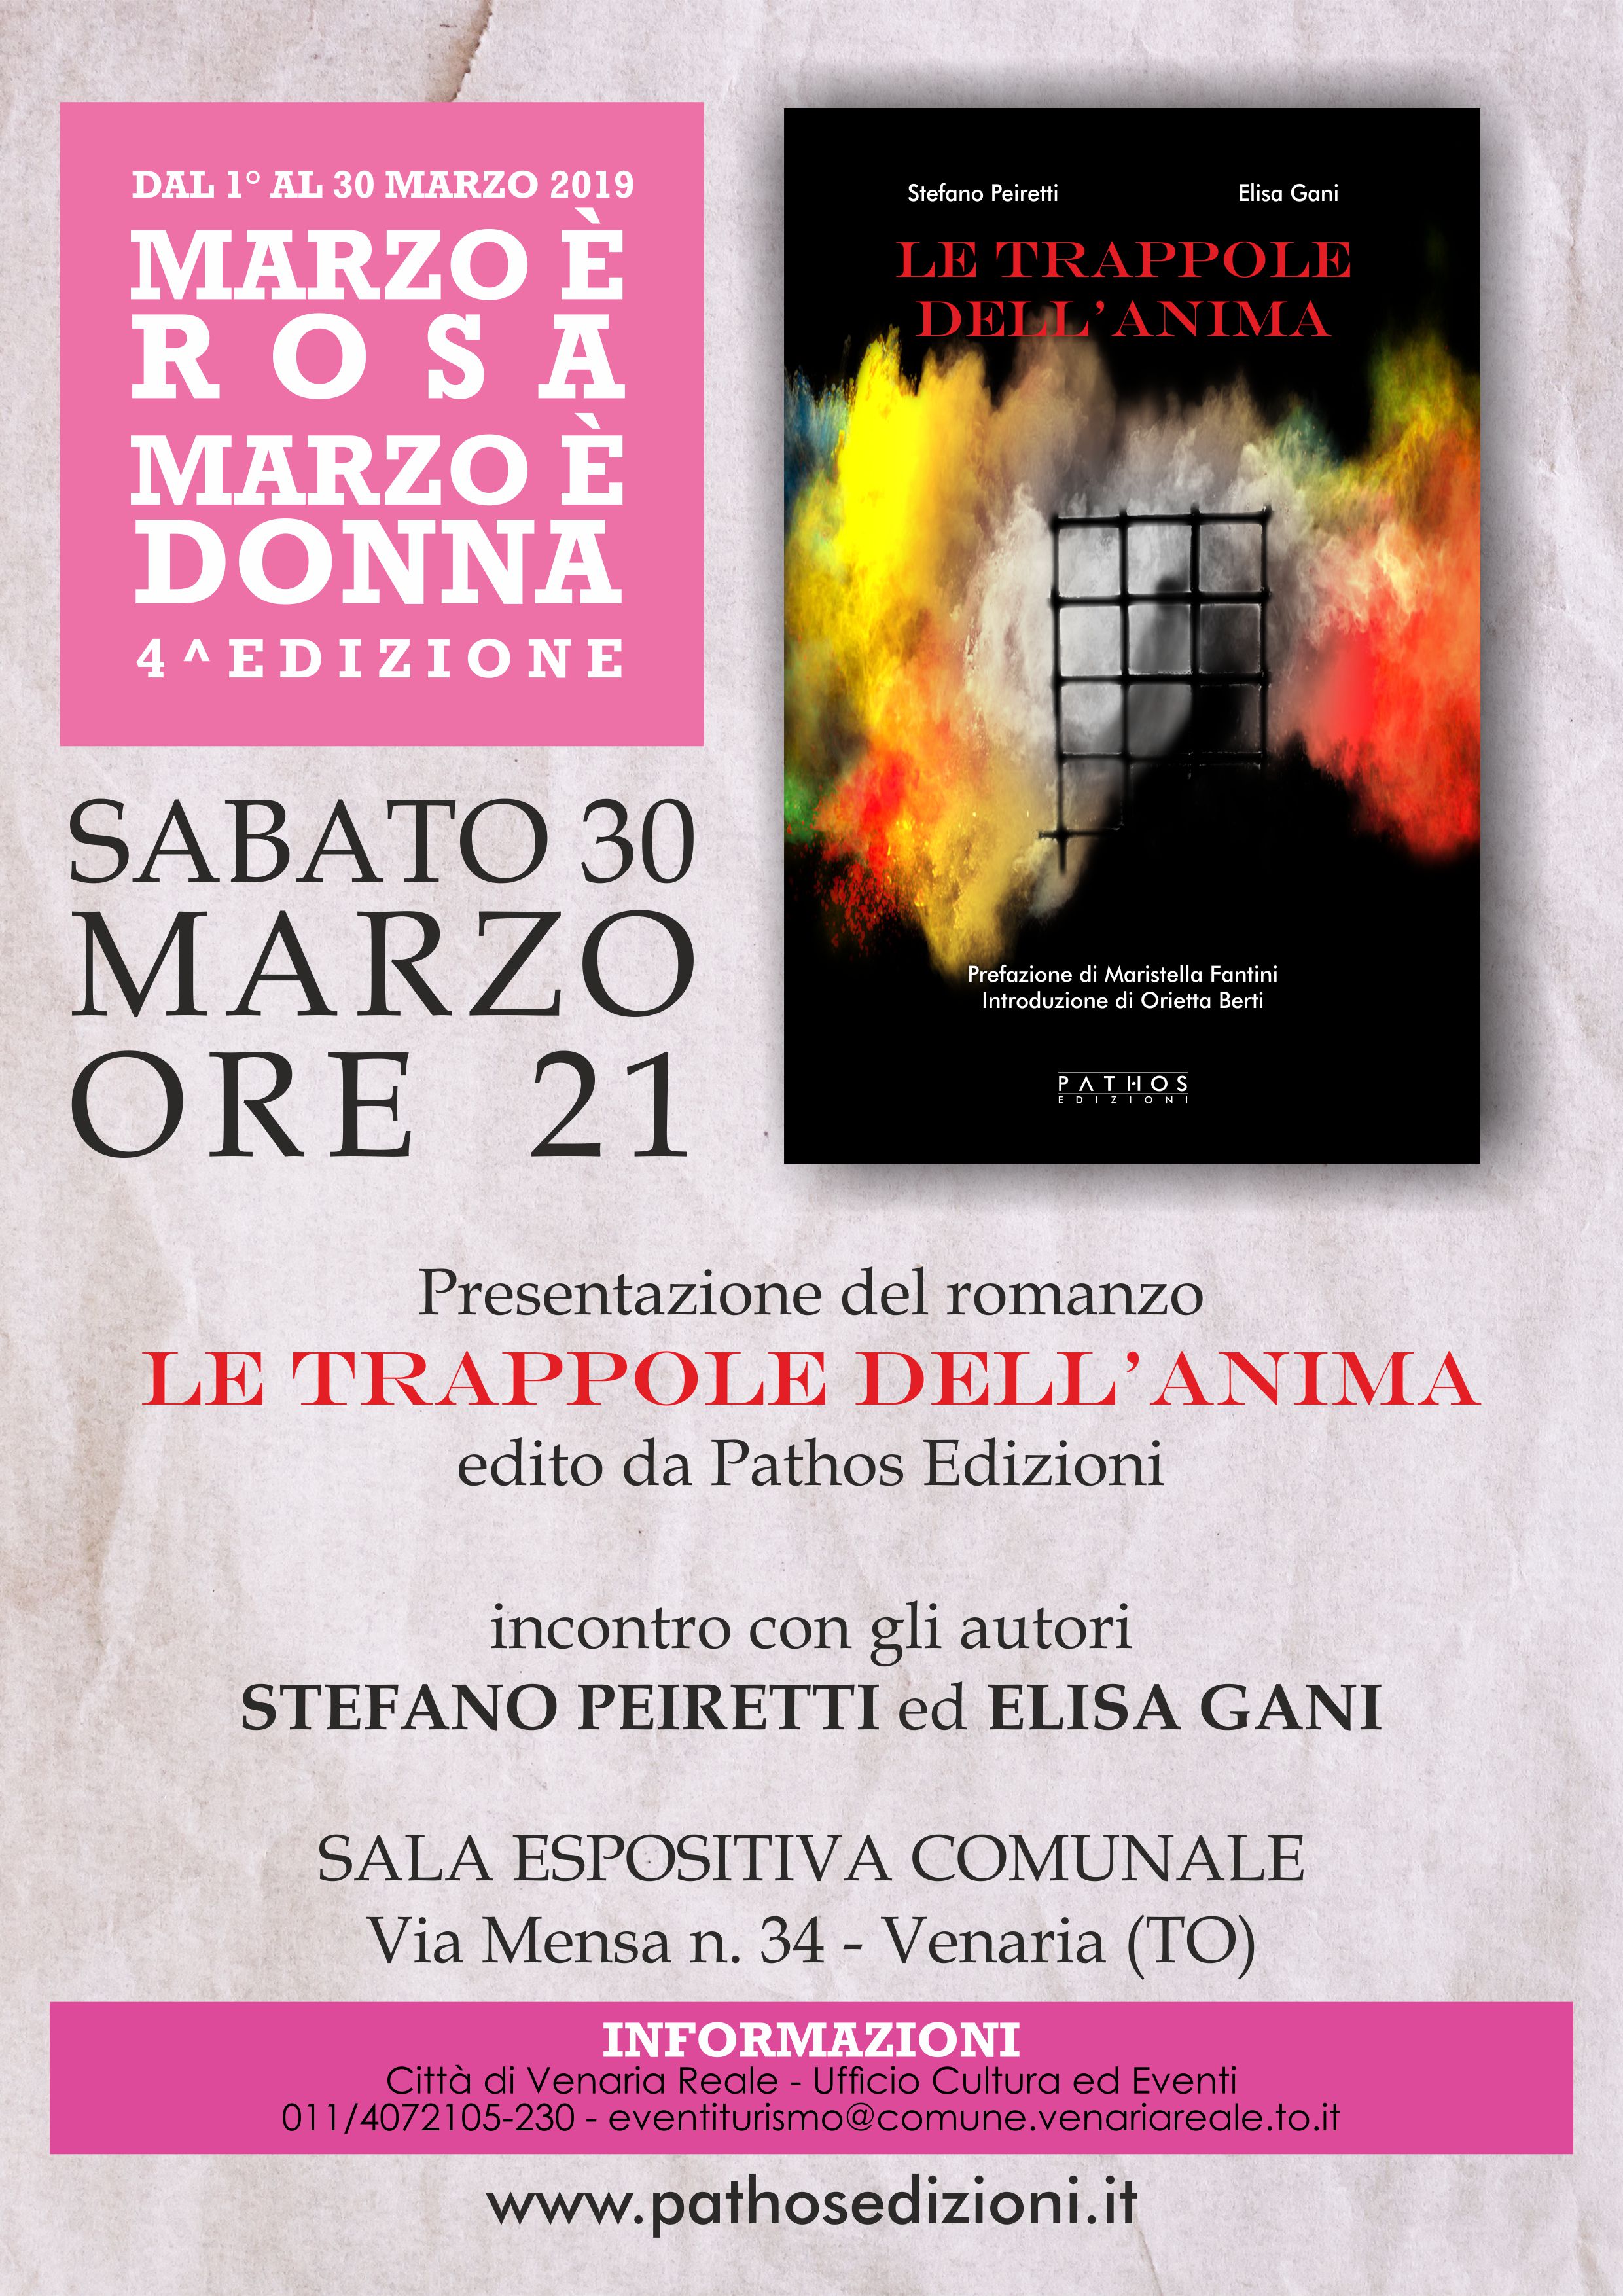 Presentazione "Le trappole dell'anima" a Venaria - 30 marzo 2019